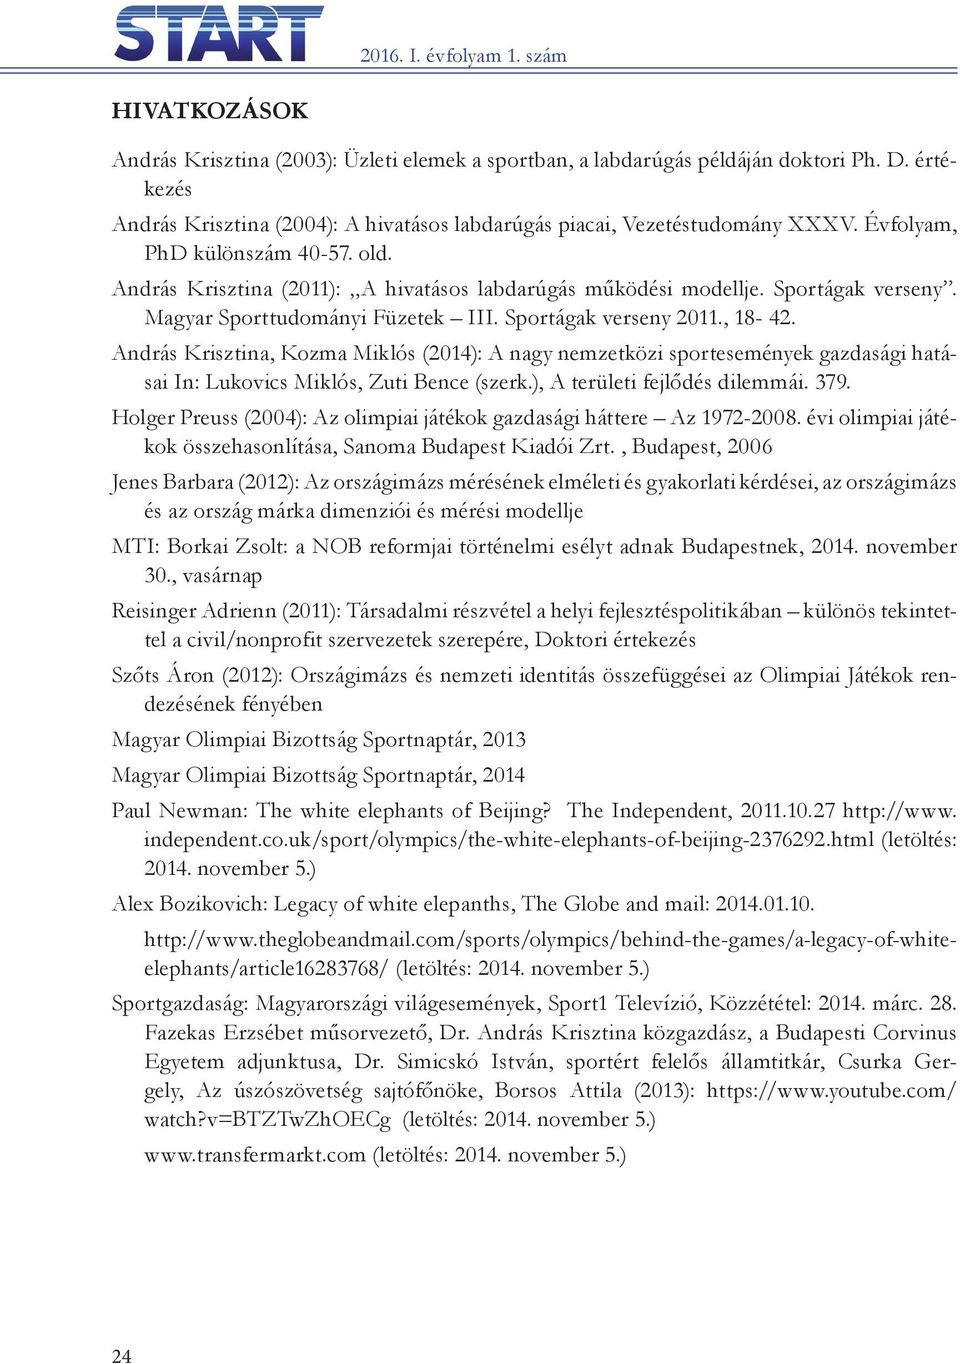 András Krisztina, Kozma Miklós (2014): A nagy nemzetközi sportesemények gazdasági hatásai In: lukovics Miklós, zuti Bence (szerk.), A területi fejlődés dilemmái. 379.